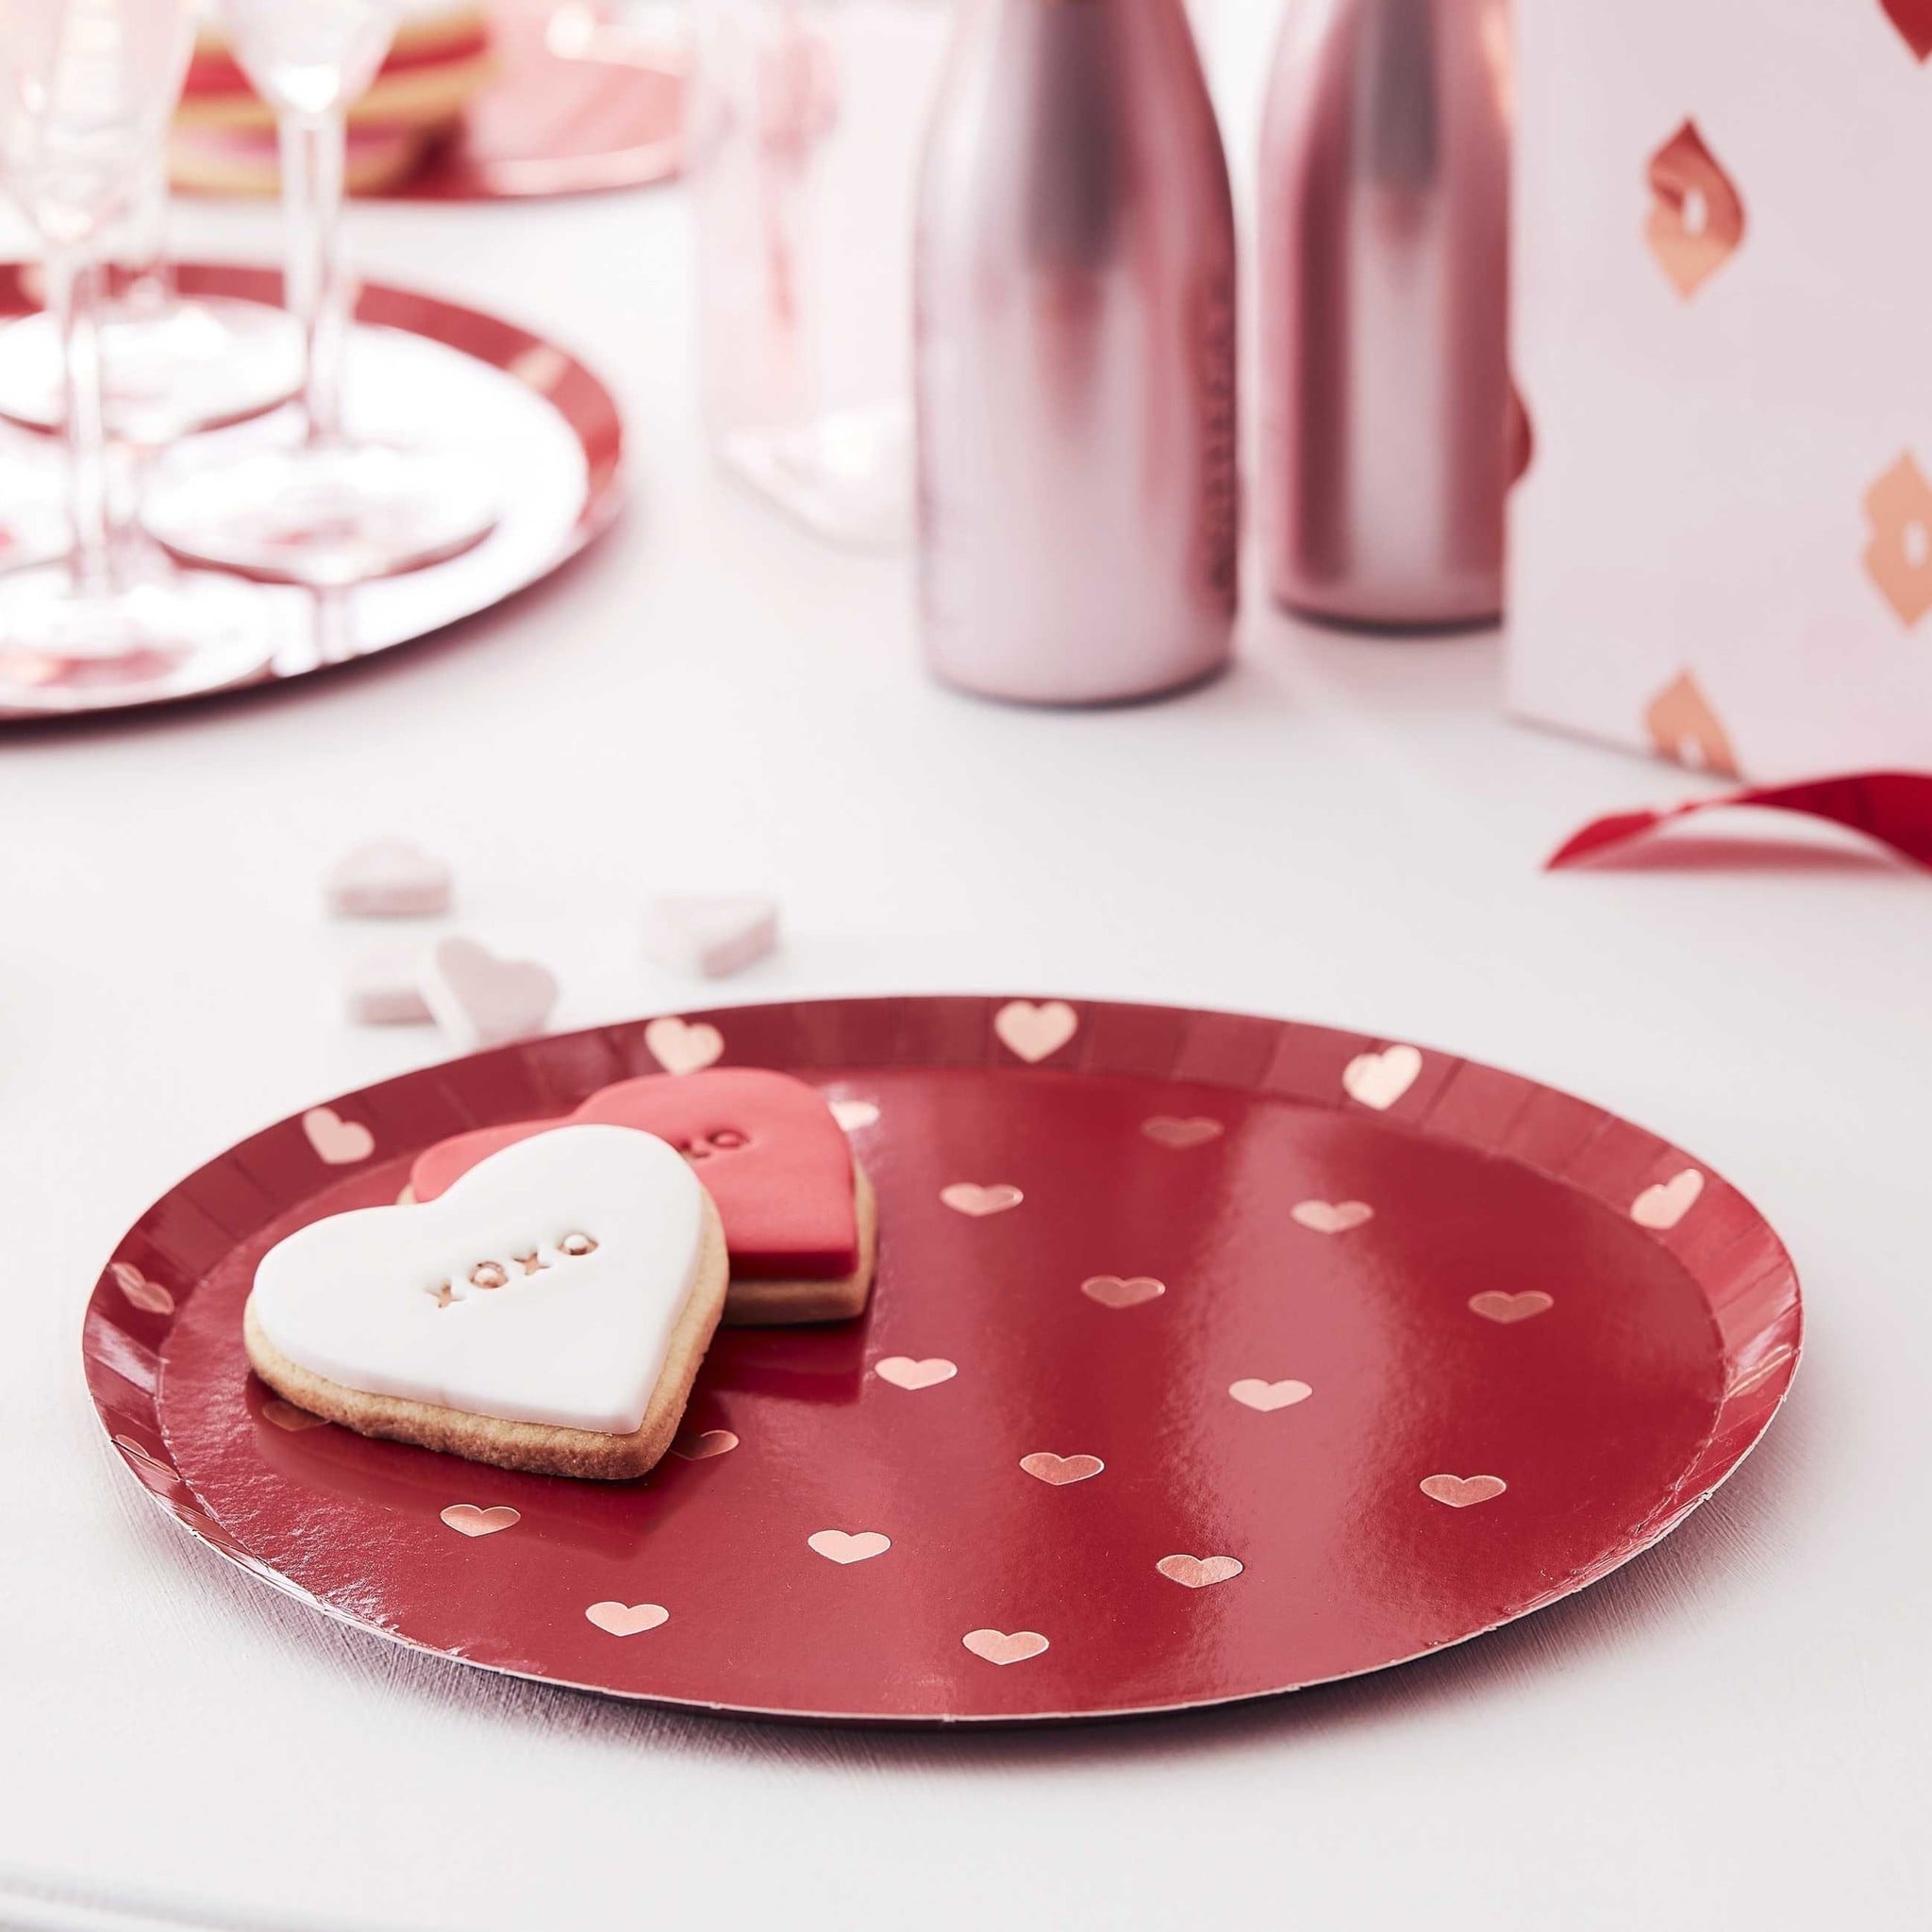 Papieren borden rood/roze hartjes - Hey Good Looking - valentijn versiering - 8stuks-2